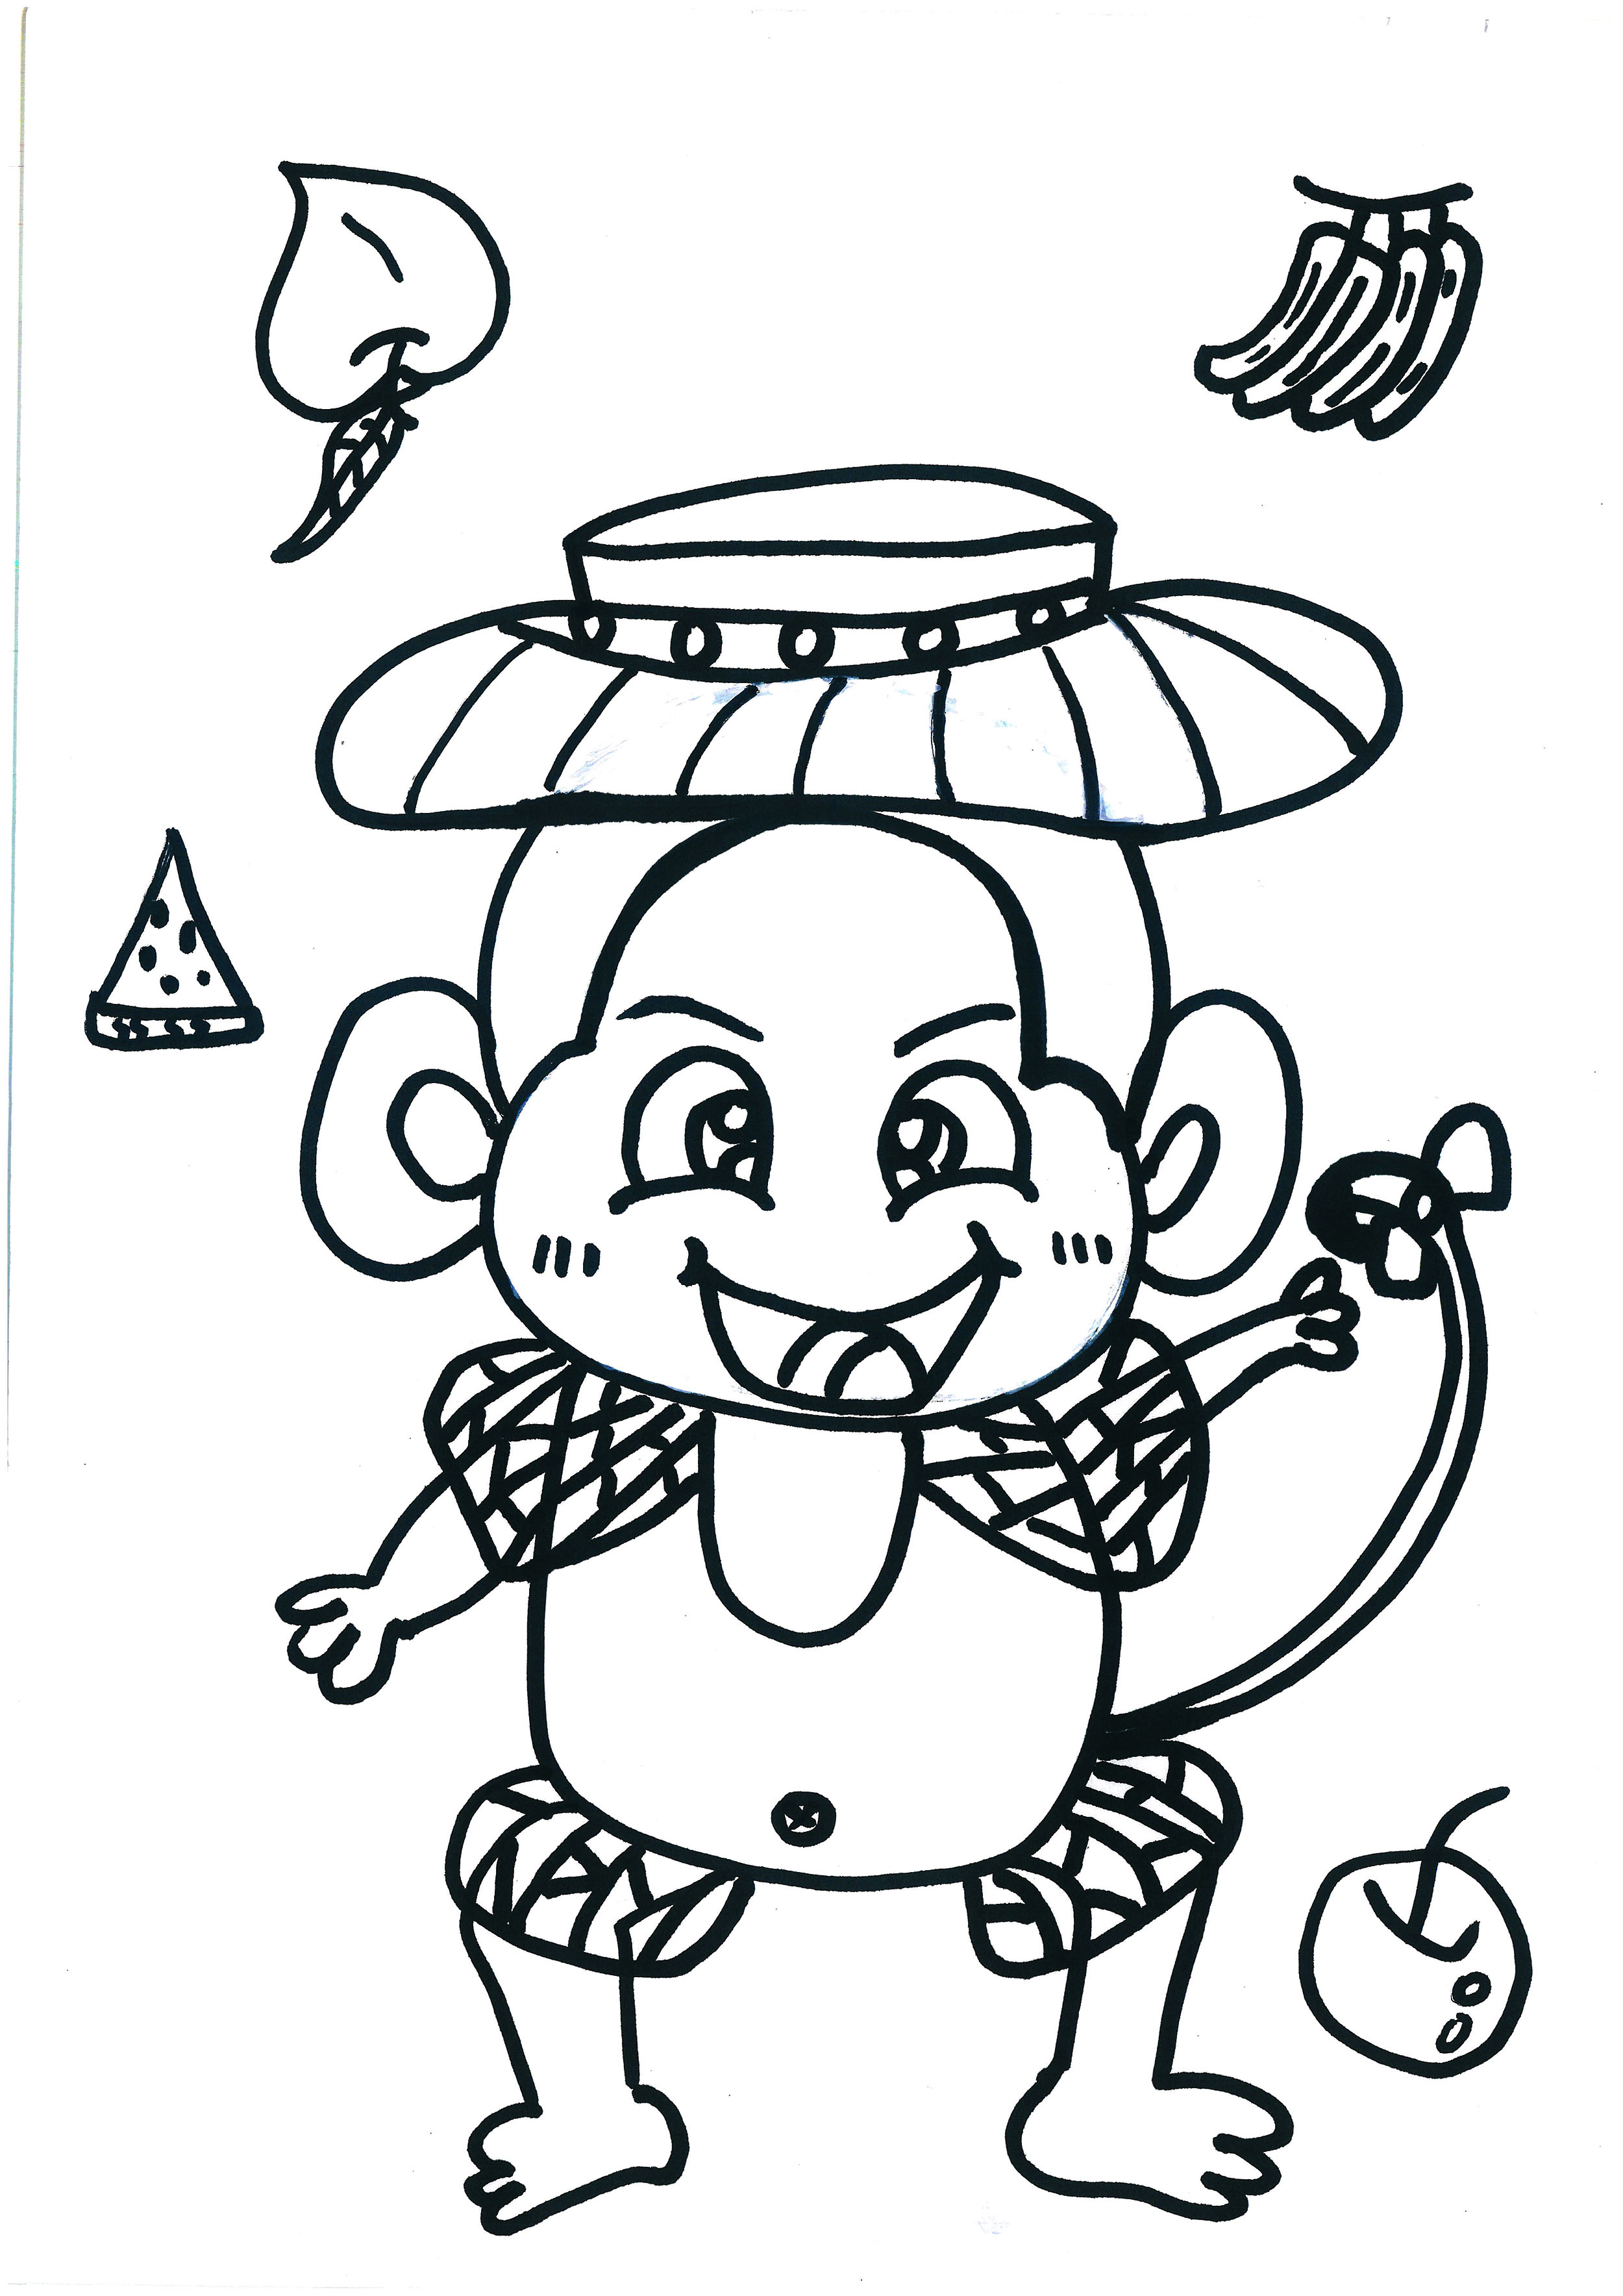 8一12岁可打印课程大图片 简单可爱小猴子的故事填色教程大全（儿童房子绘画图片大全） - 有点网 - 好手艺